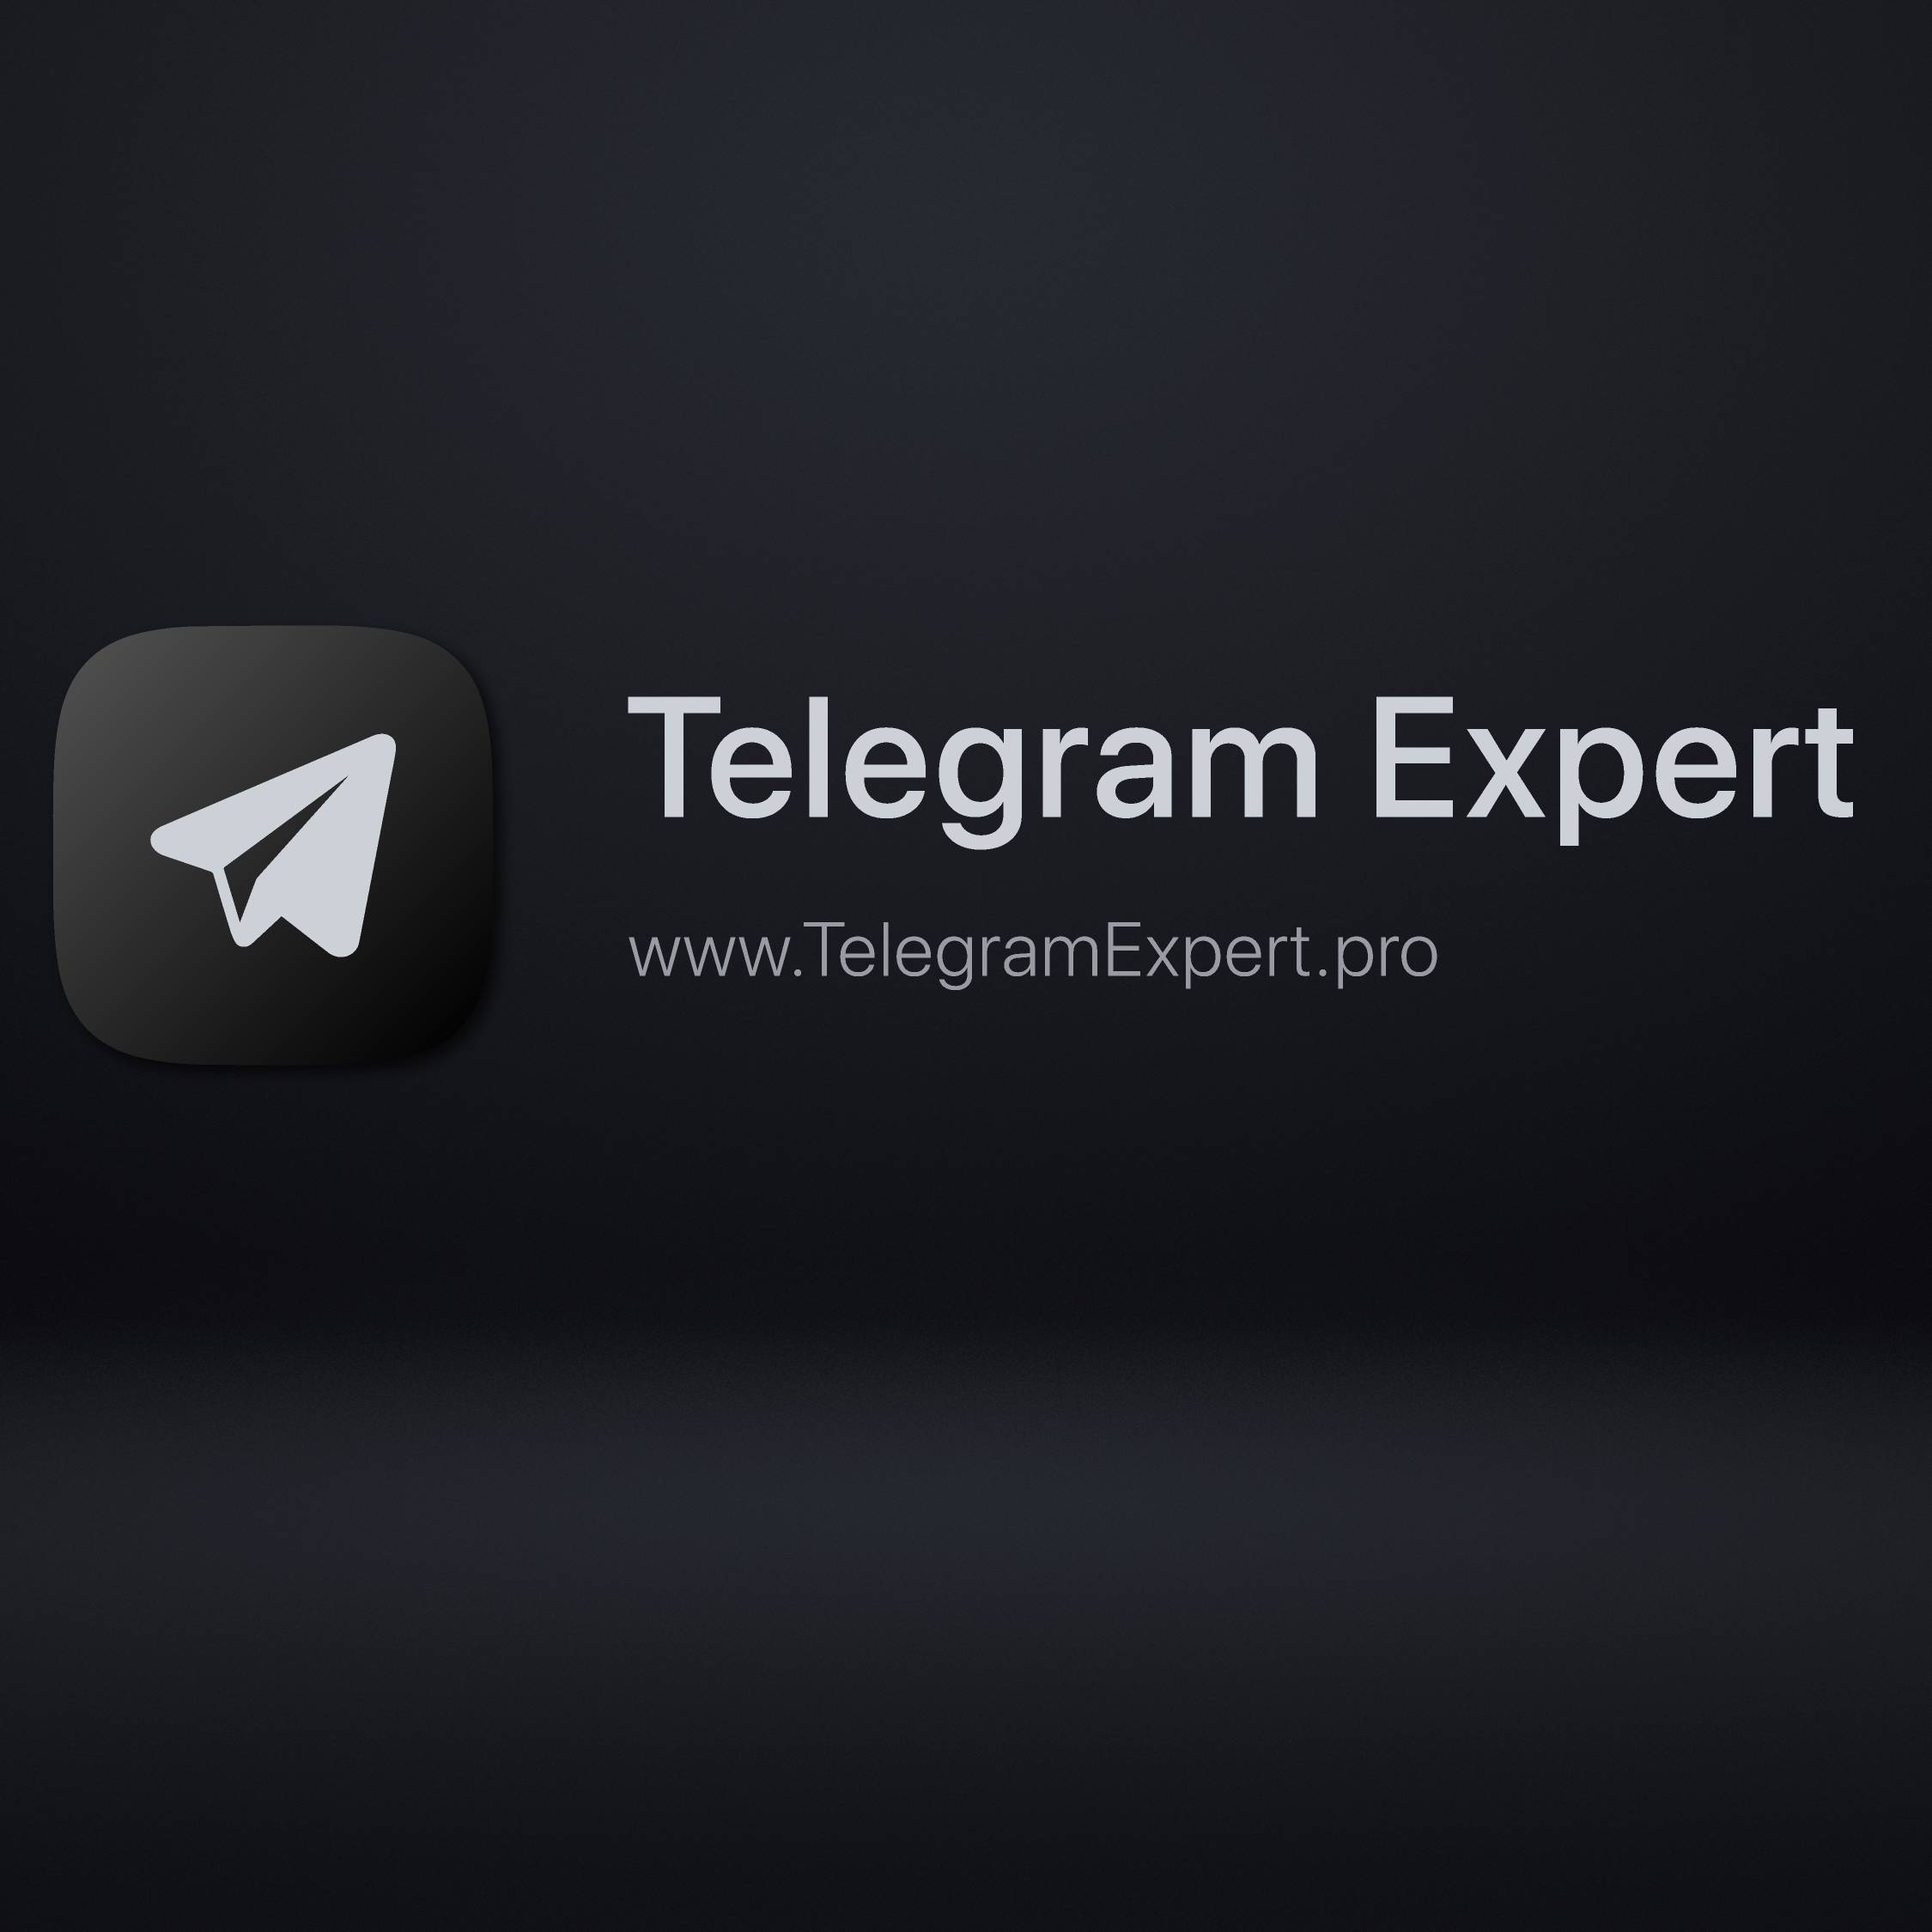 Телеграмм скачать для андроид бесплатно на русском языке последняя версия фото 105